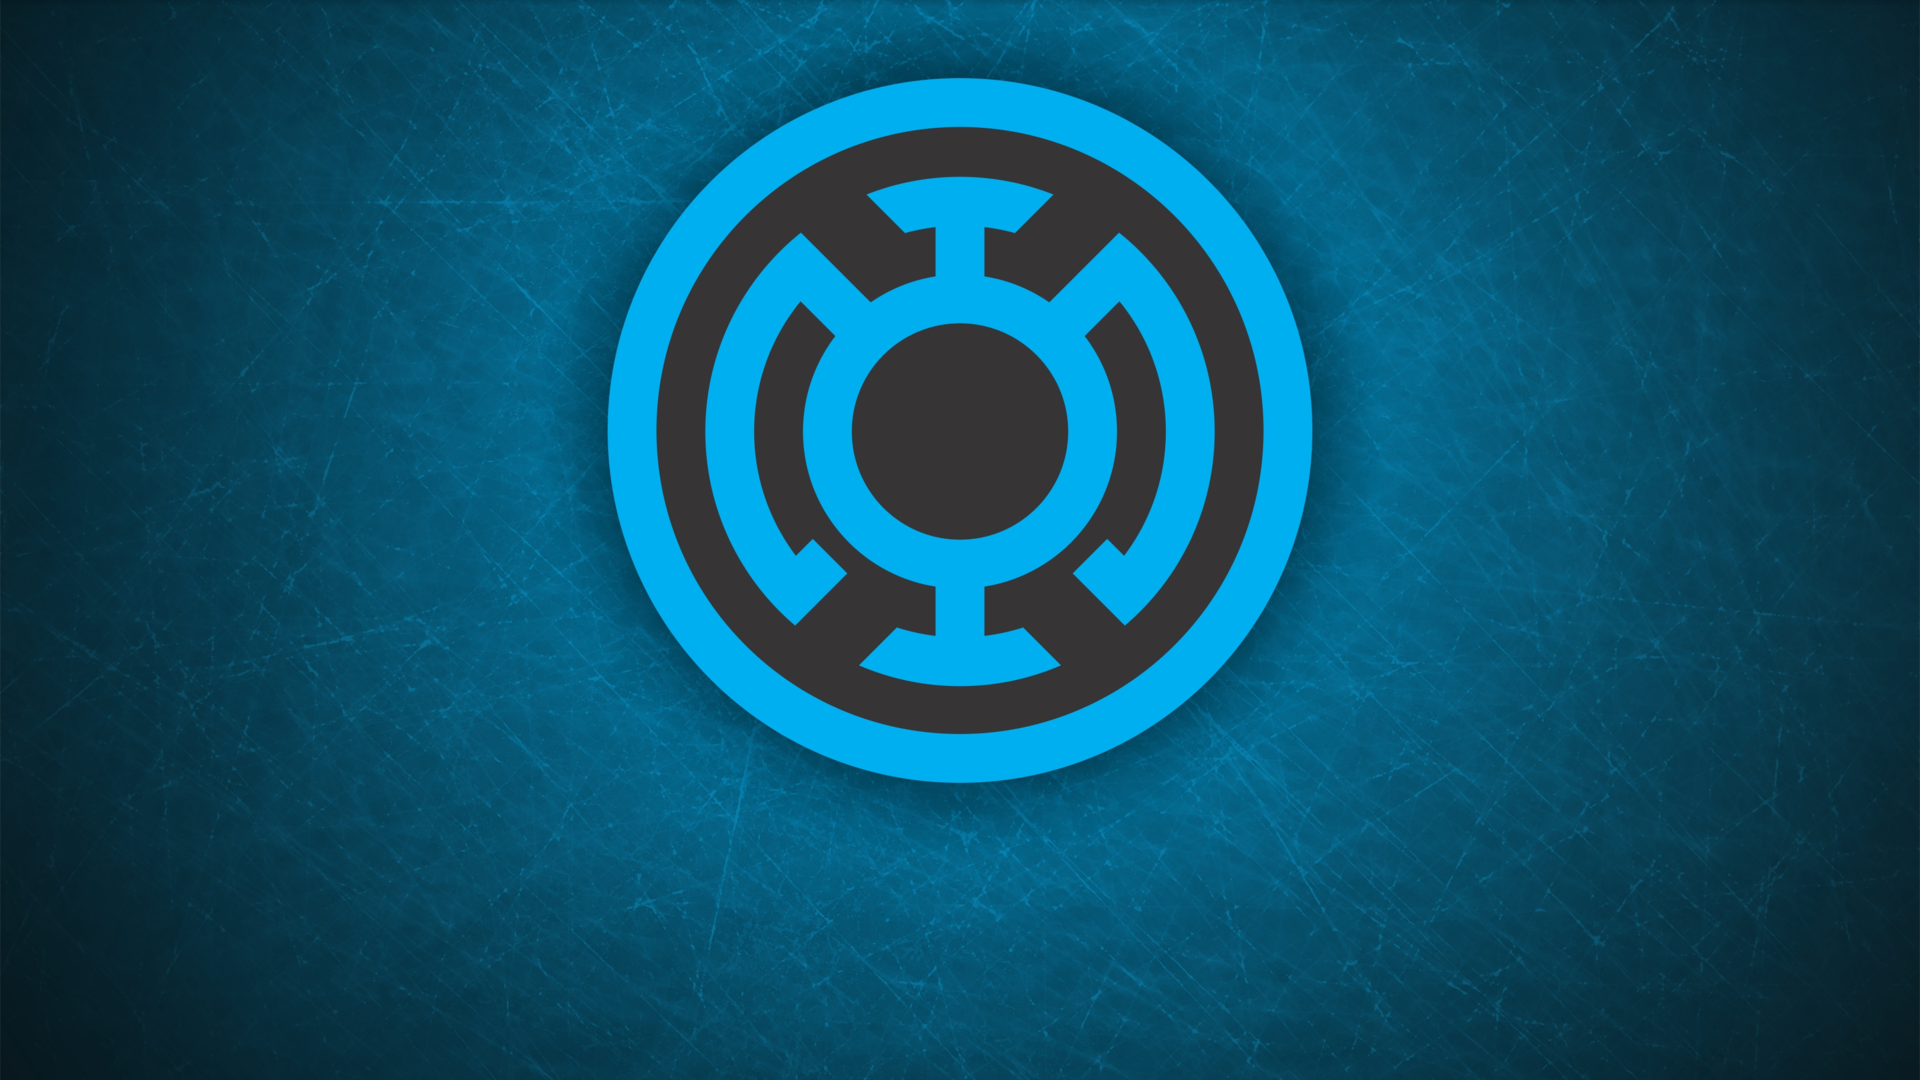 Blue Lantern Corps #6